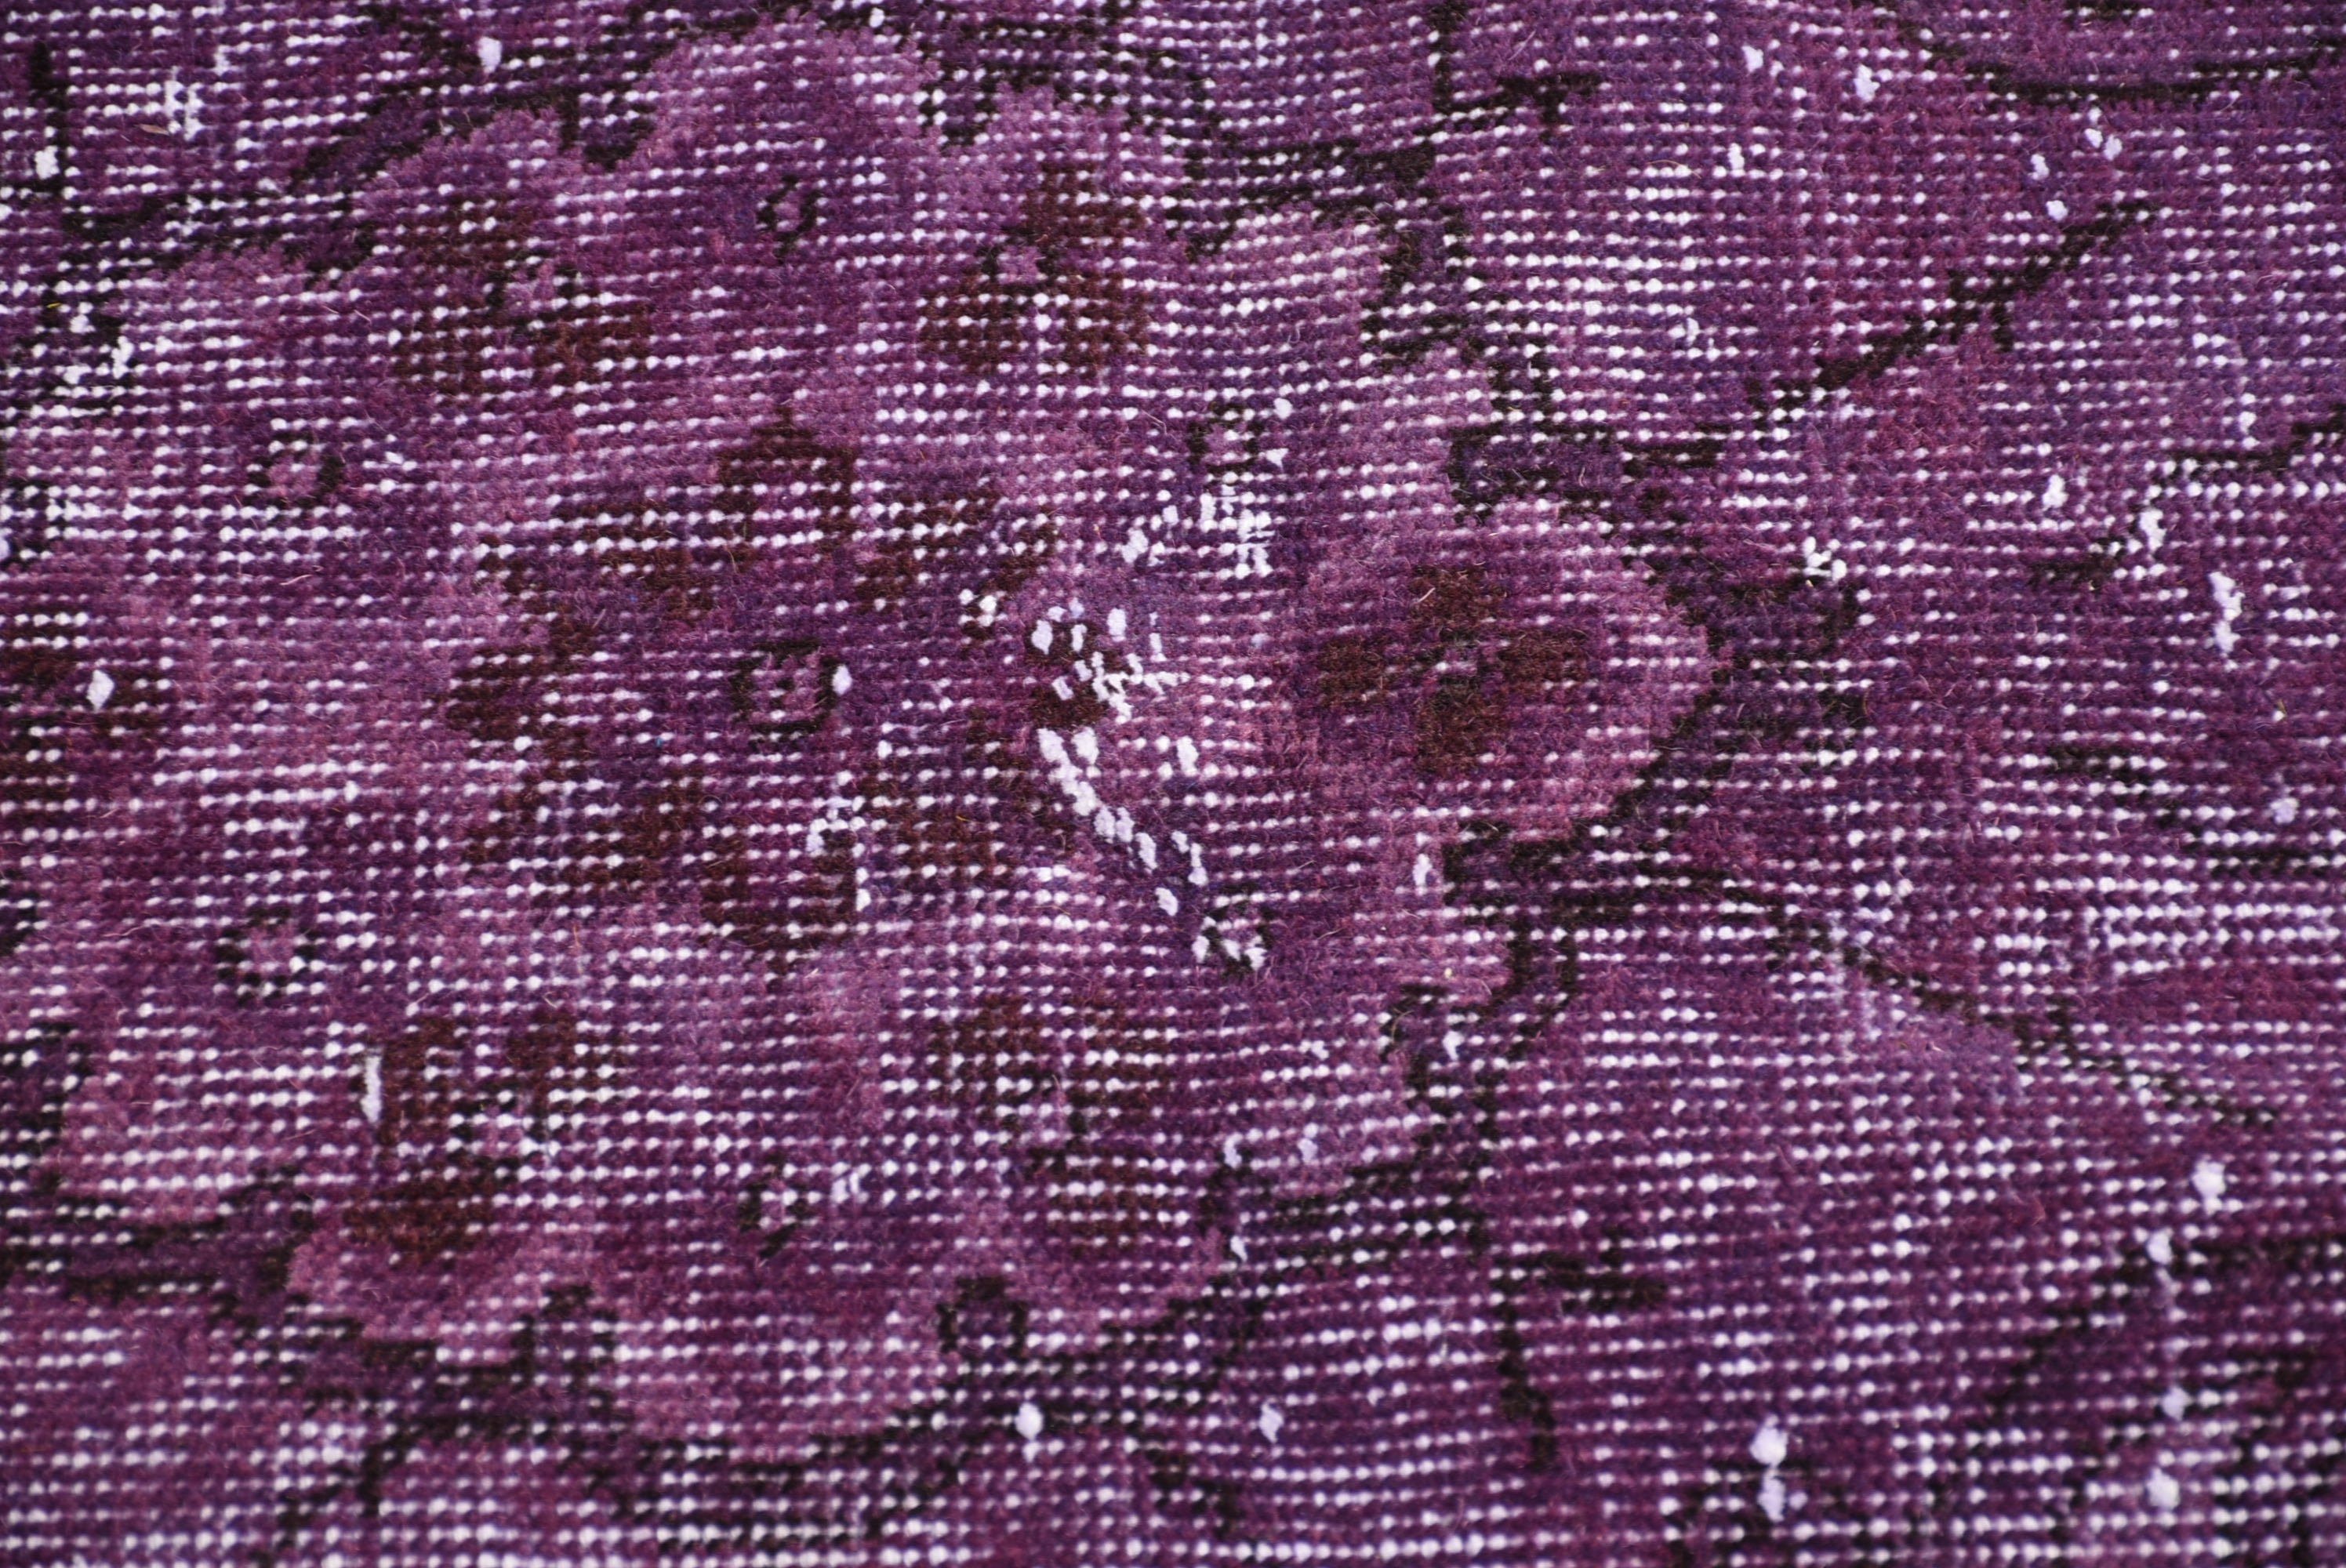 Purple Kitchen Rugs, Rugs for Salon, Antique Rug, Vintage Rug, Turkish Rug, Dining Room Rugs, Salon Rug, 5.8x9.1 ft Large Rug, Bedroom Rug